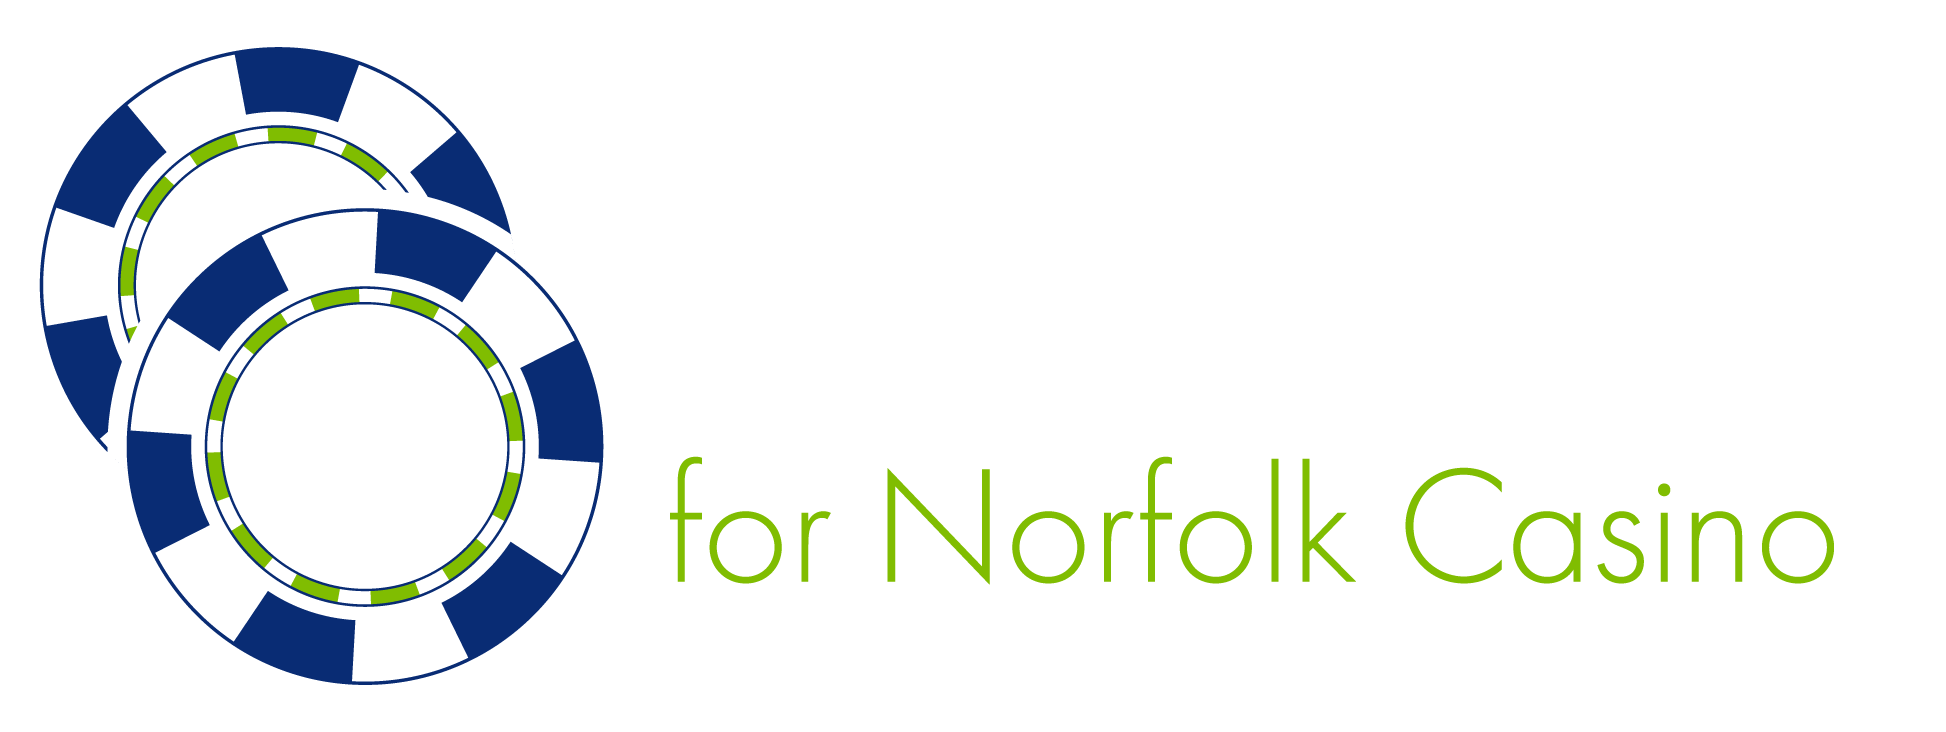 all in for Norfolk casino logo